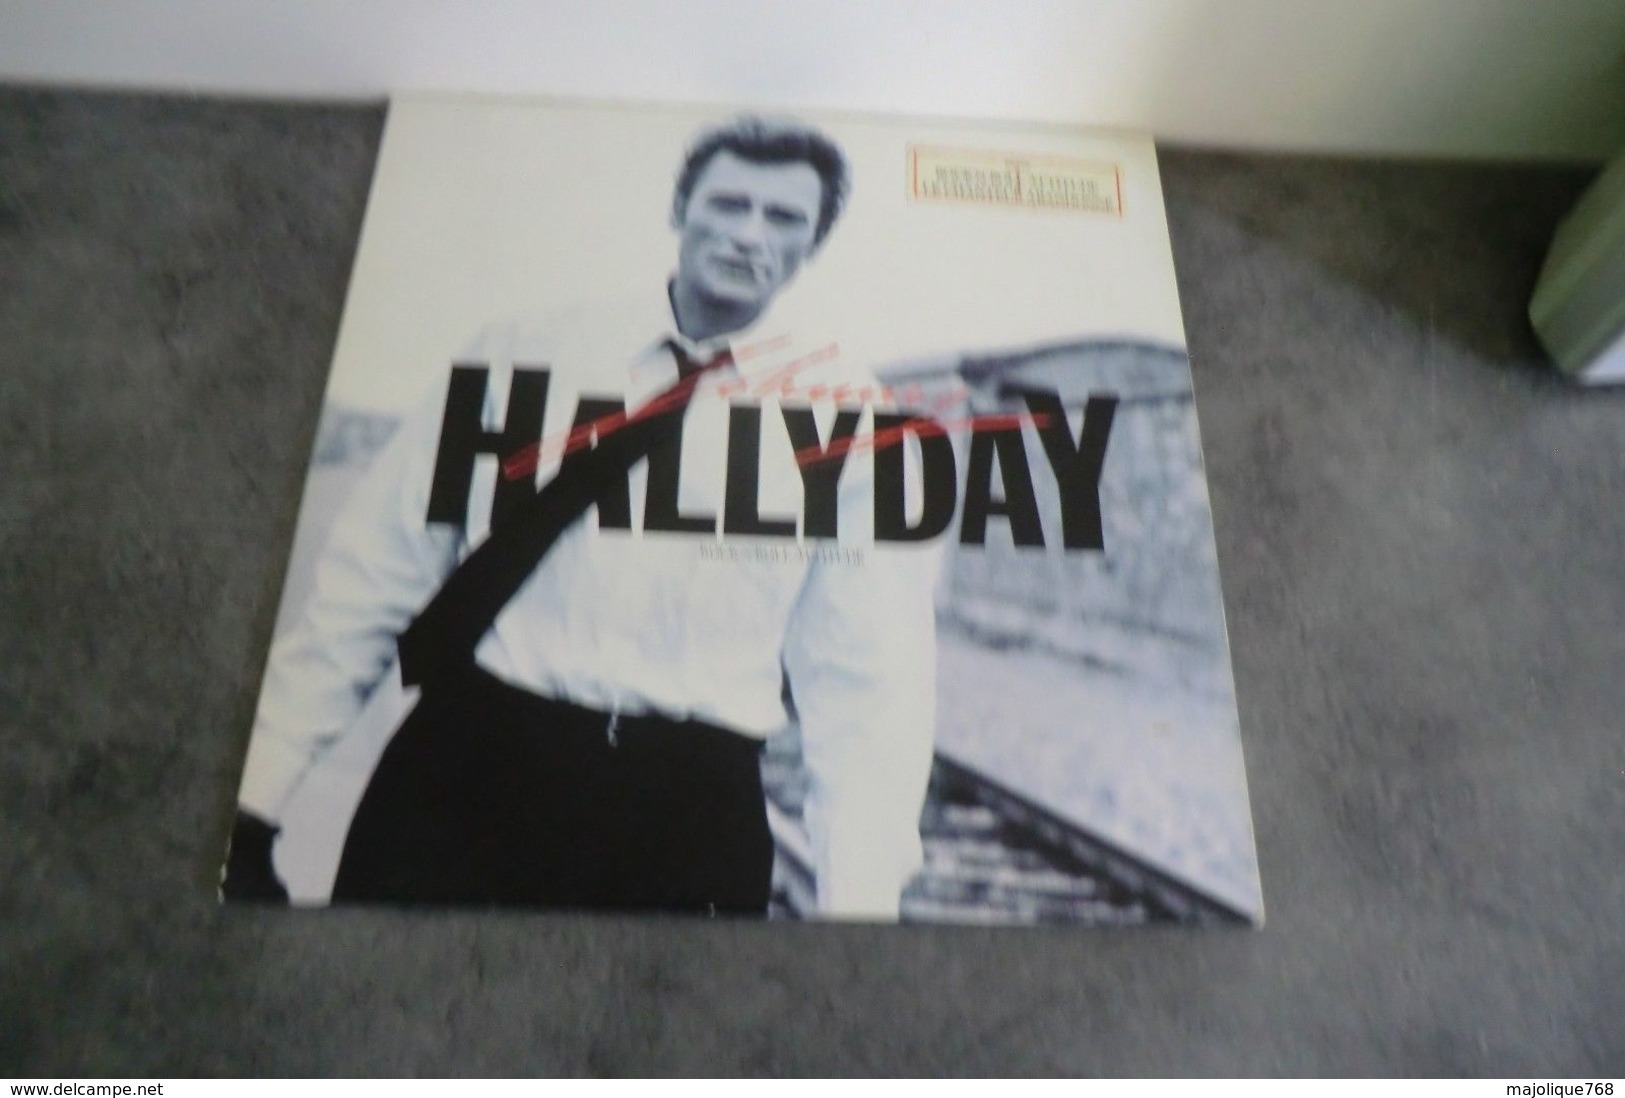 Disque De Johnny Hallyday - Rock'N'Roll Attitude - Philips 824 824 - 1 - 1985 - Rock